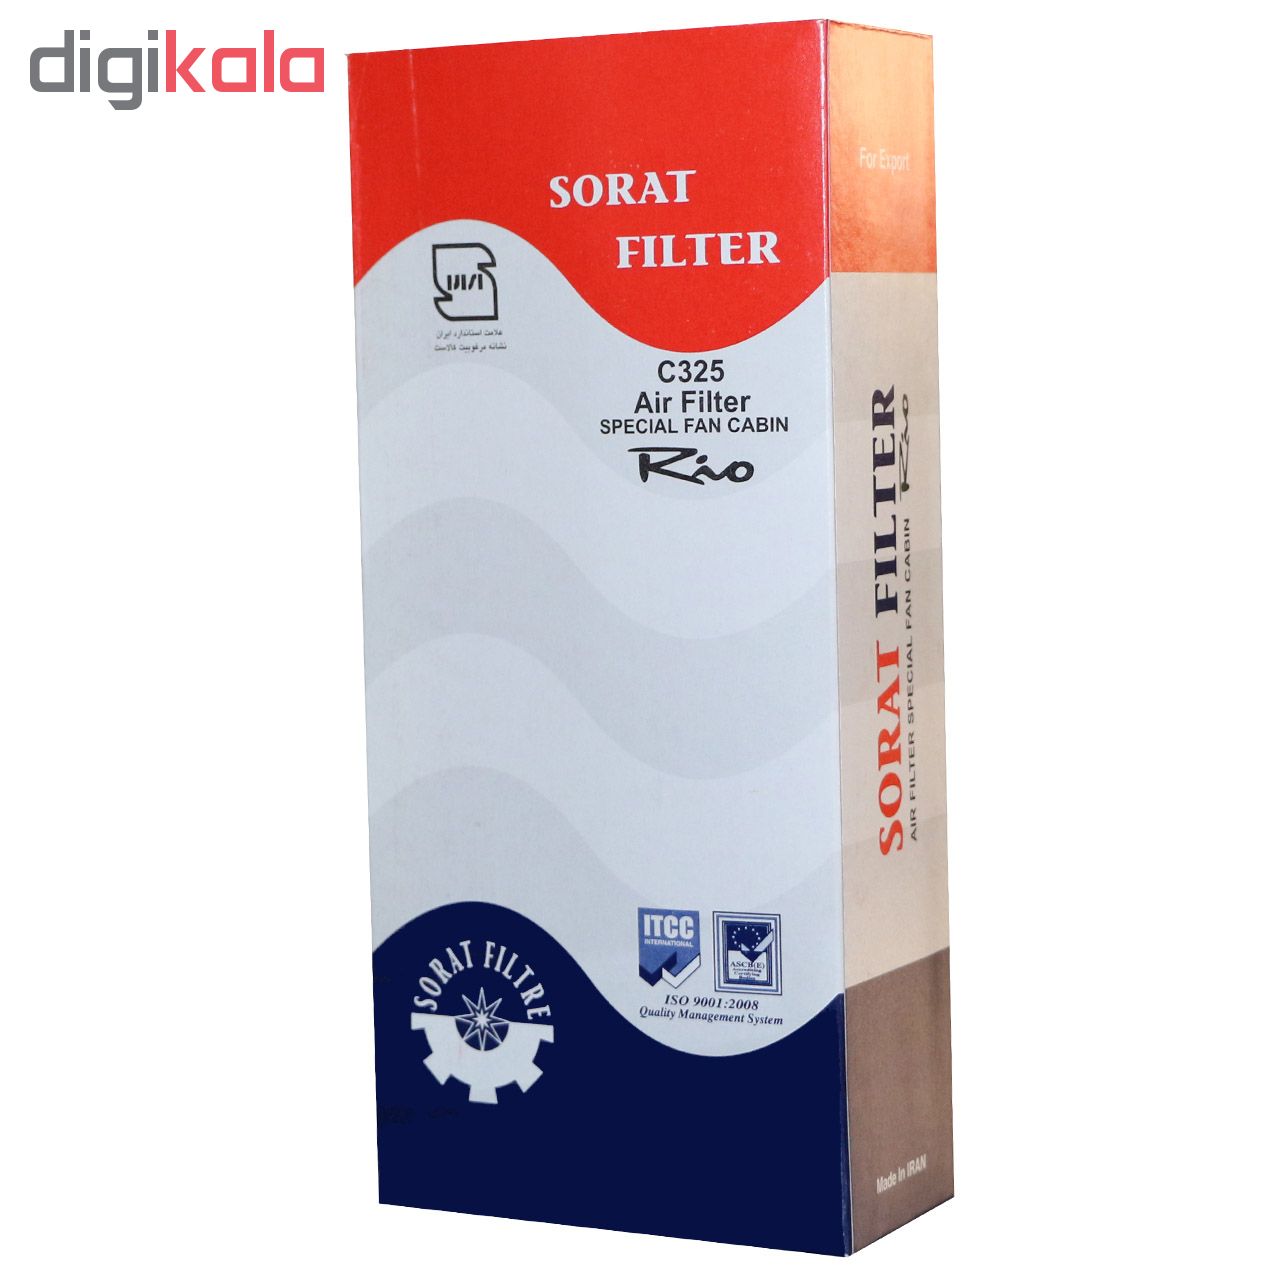 فیلتر کابین خودرو سرعت فیلتر مدل C325 مناسب برای کیا ریو بسته 2 عددی به همراه فیلتر هوا 